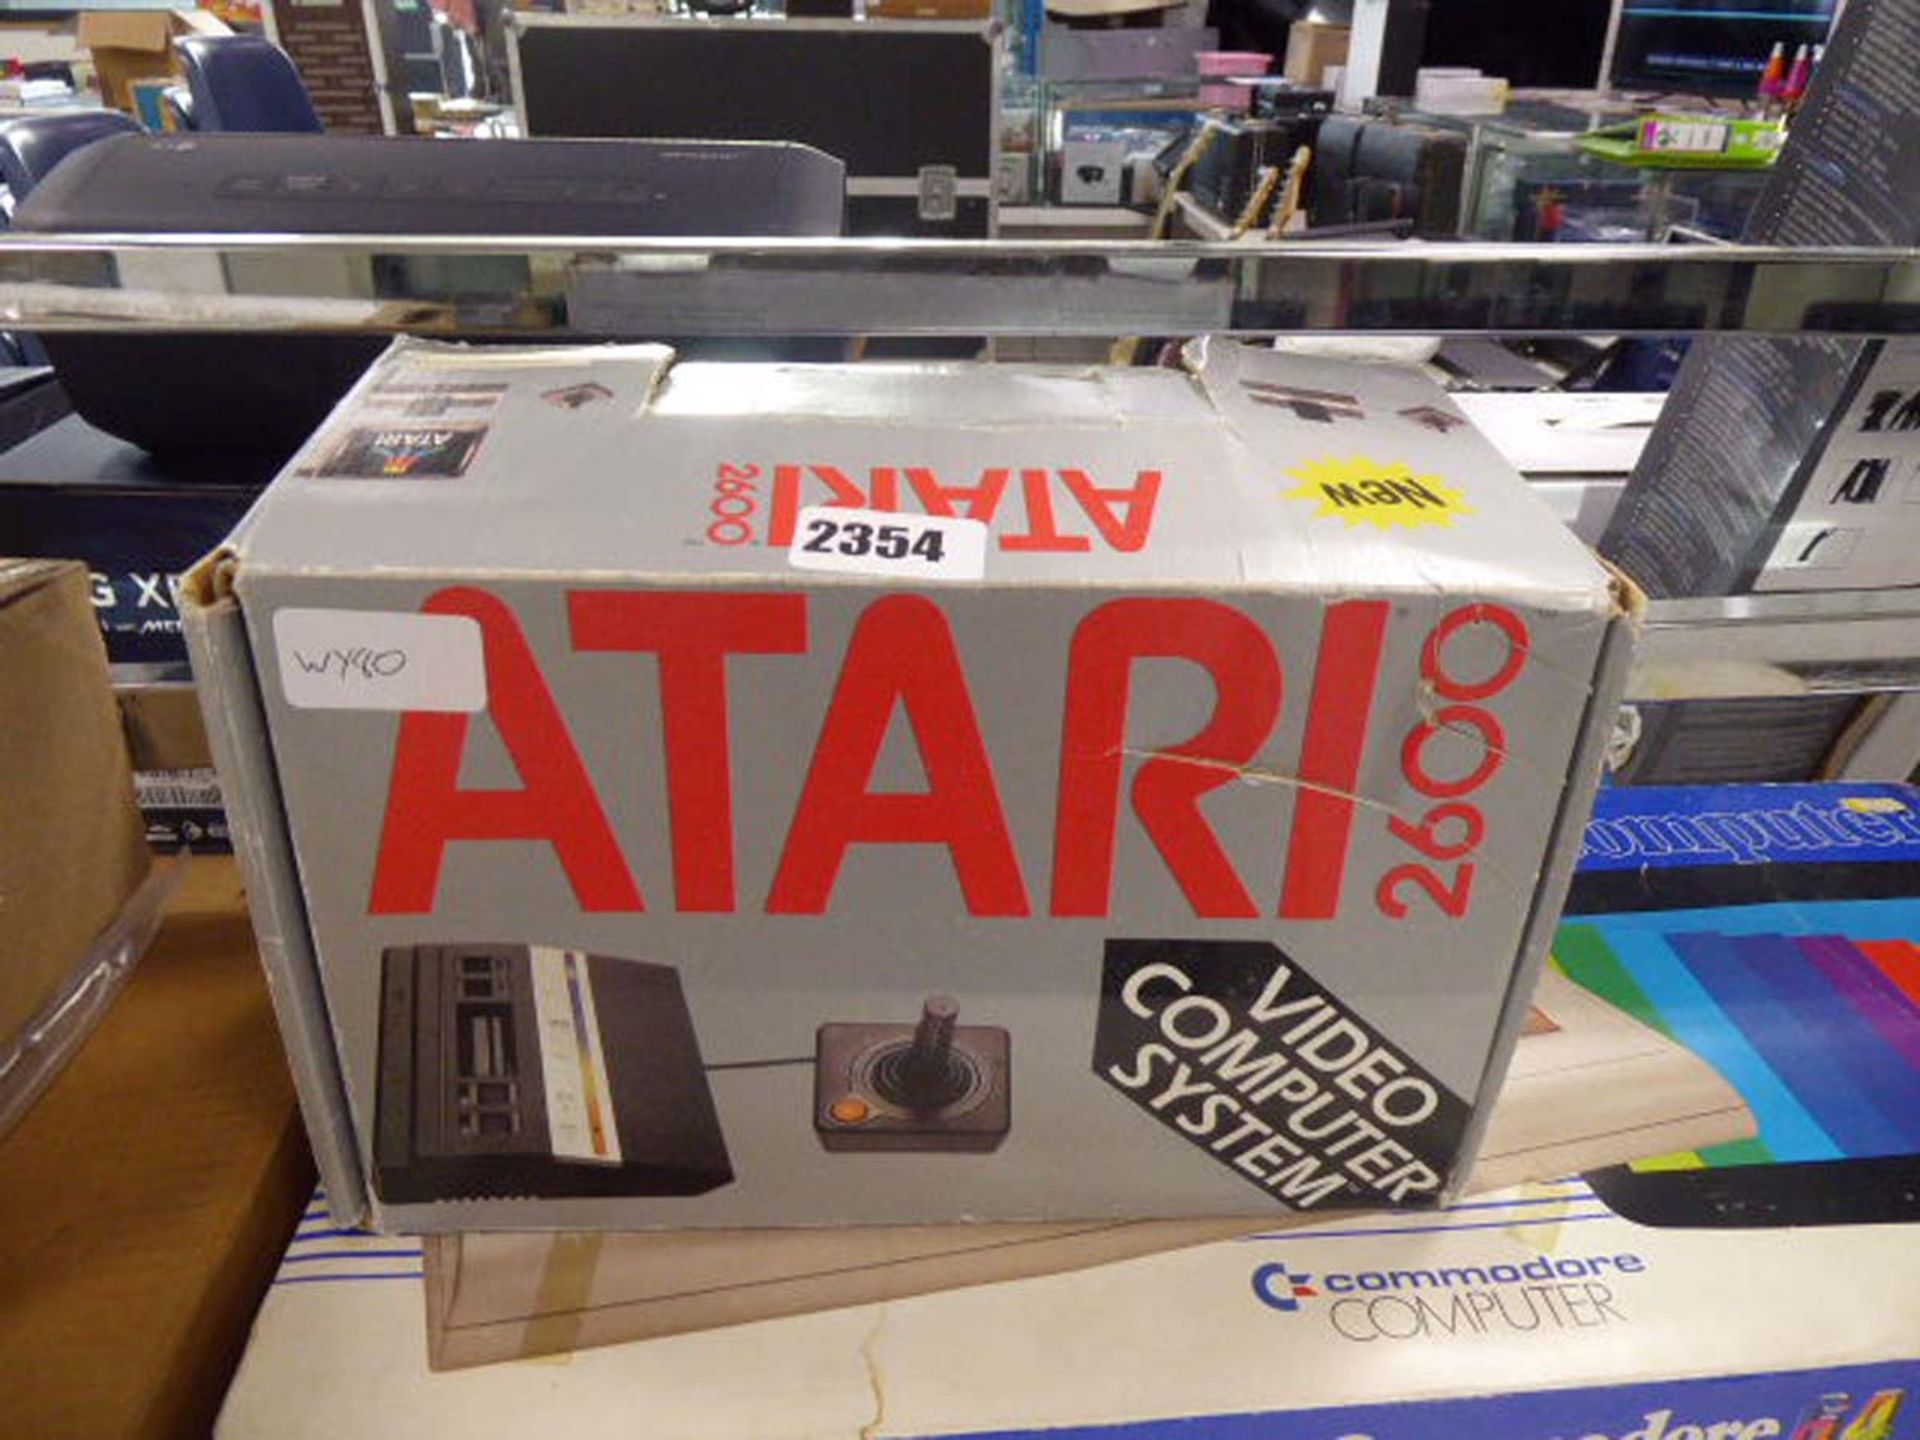 Atari 2600 gaming console